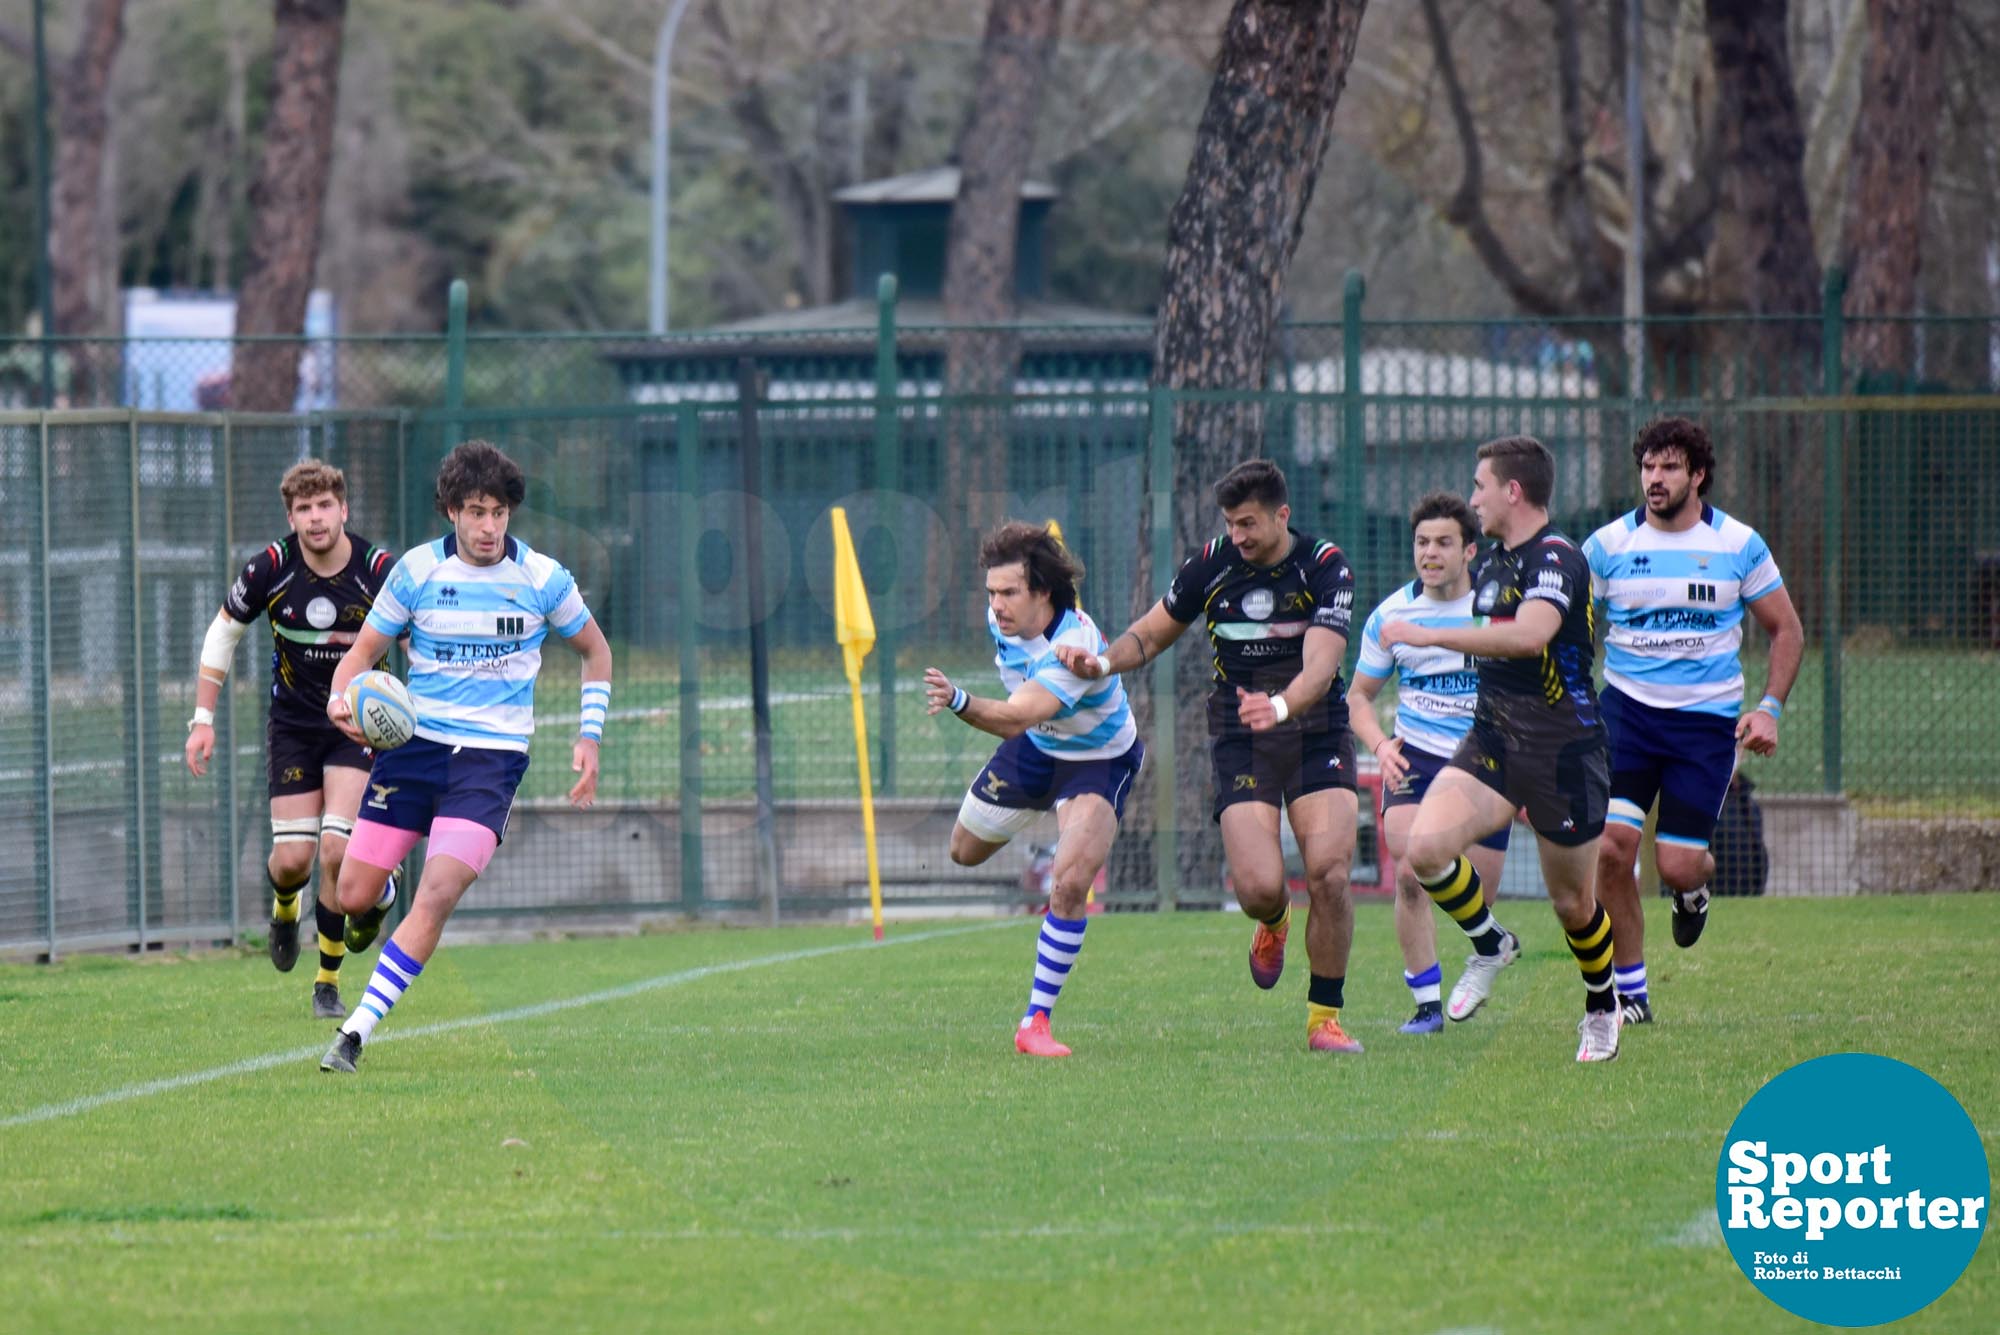 Lazio Rugby vs Viadana
© Foto di Roberto Bettacchi